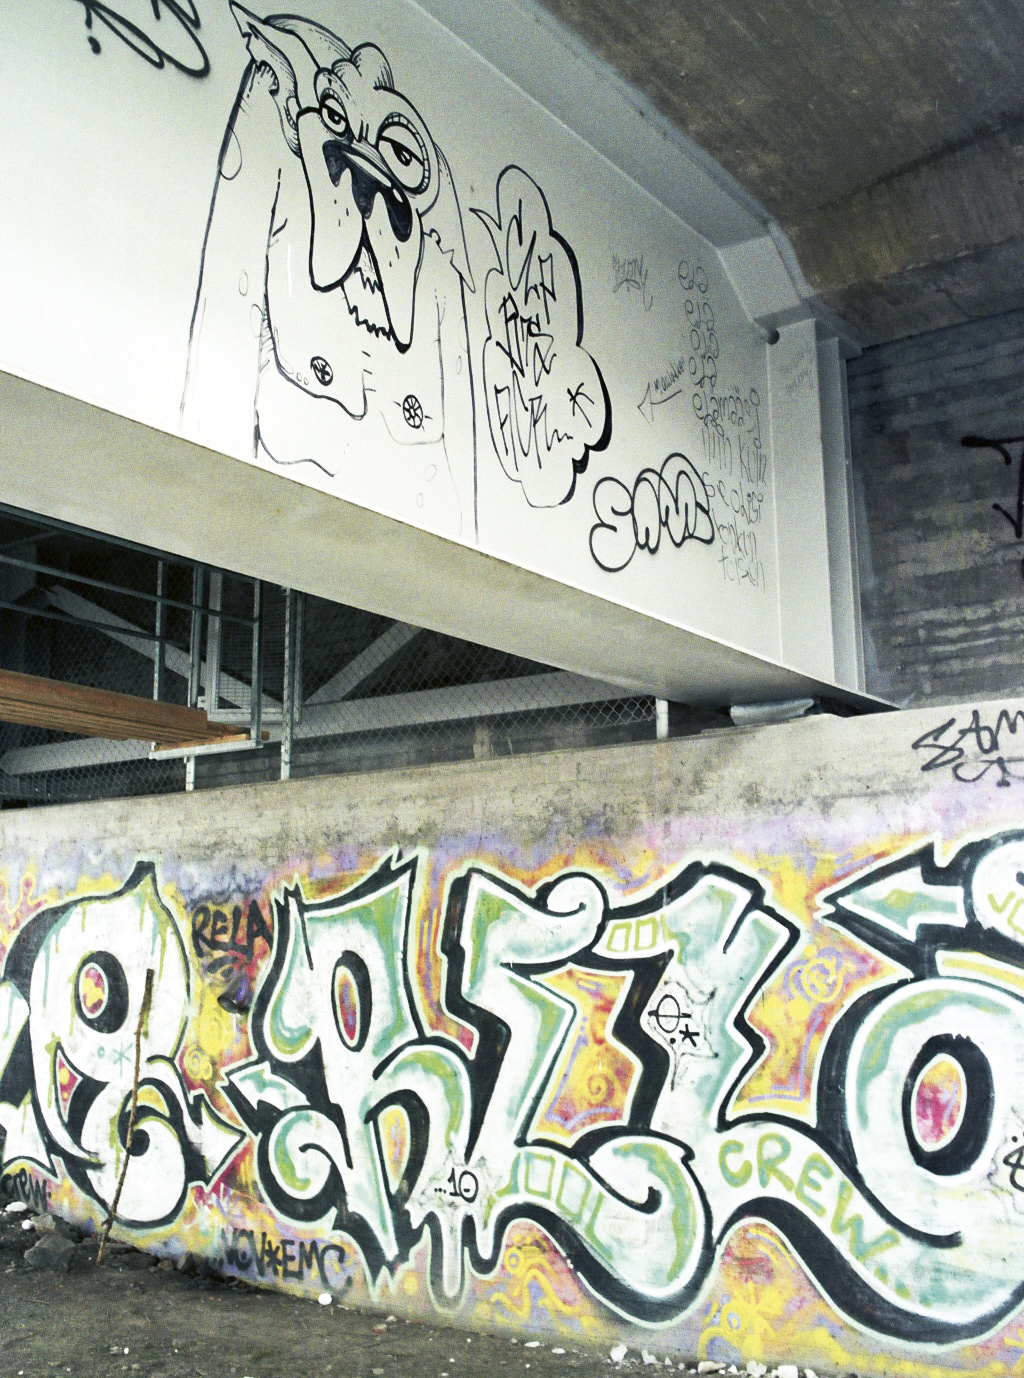 Näsinsiltojen alla oli ennen useita graffiteja.